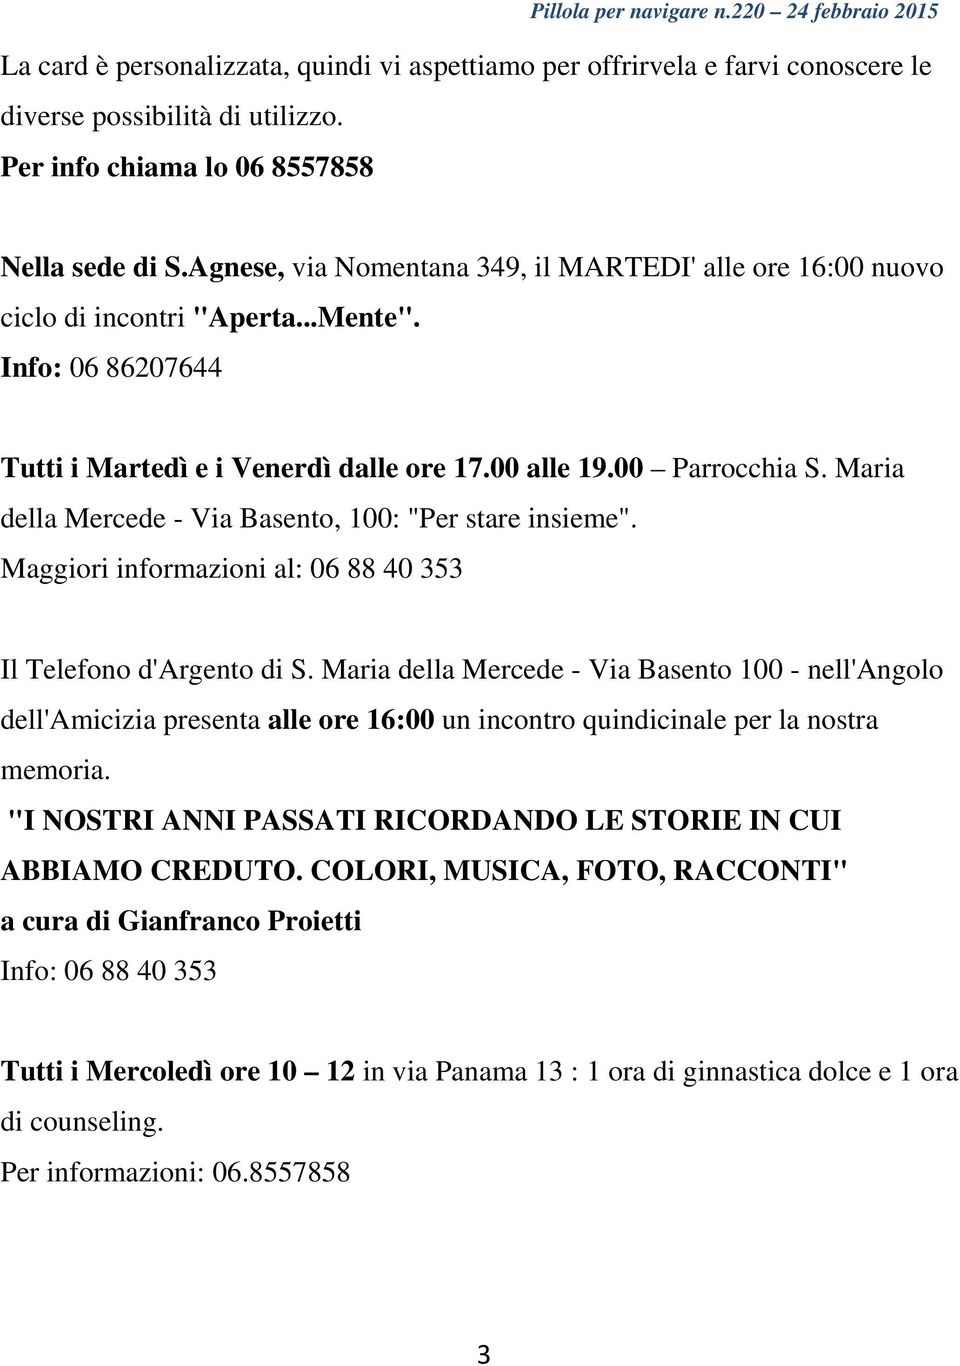 Maria della Mercede - Via Basento, 100: "Per stare insieme". Maggiori informazioni al: 06 88 40 353 Il Telefono d'argento di S.